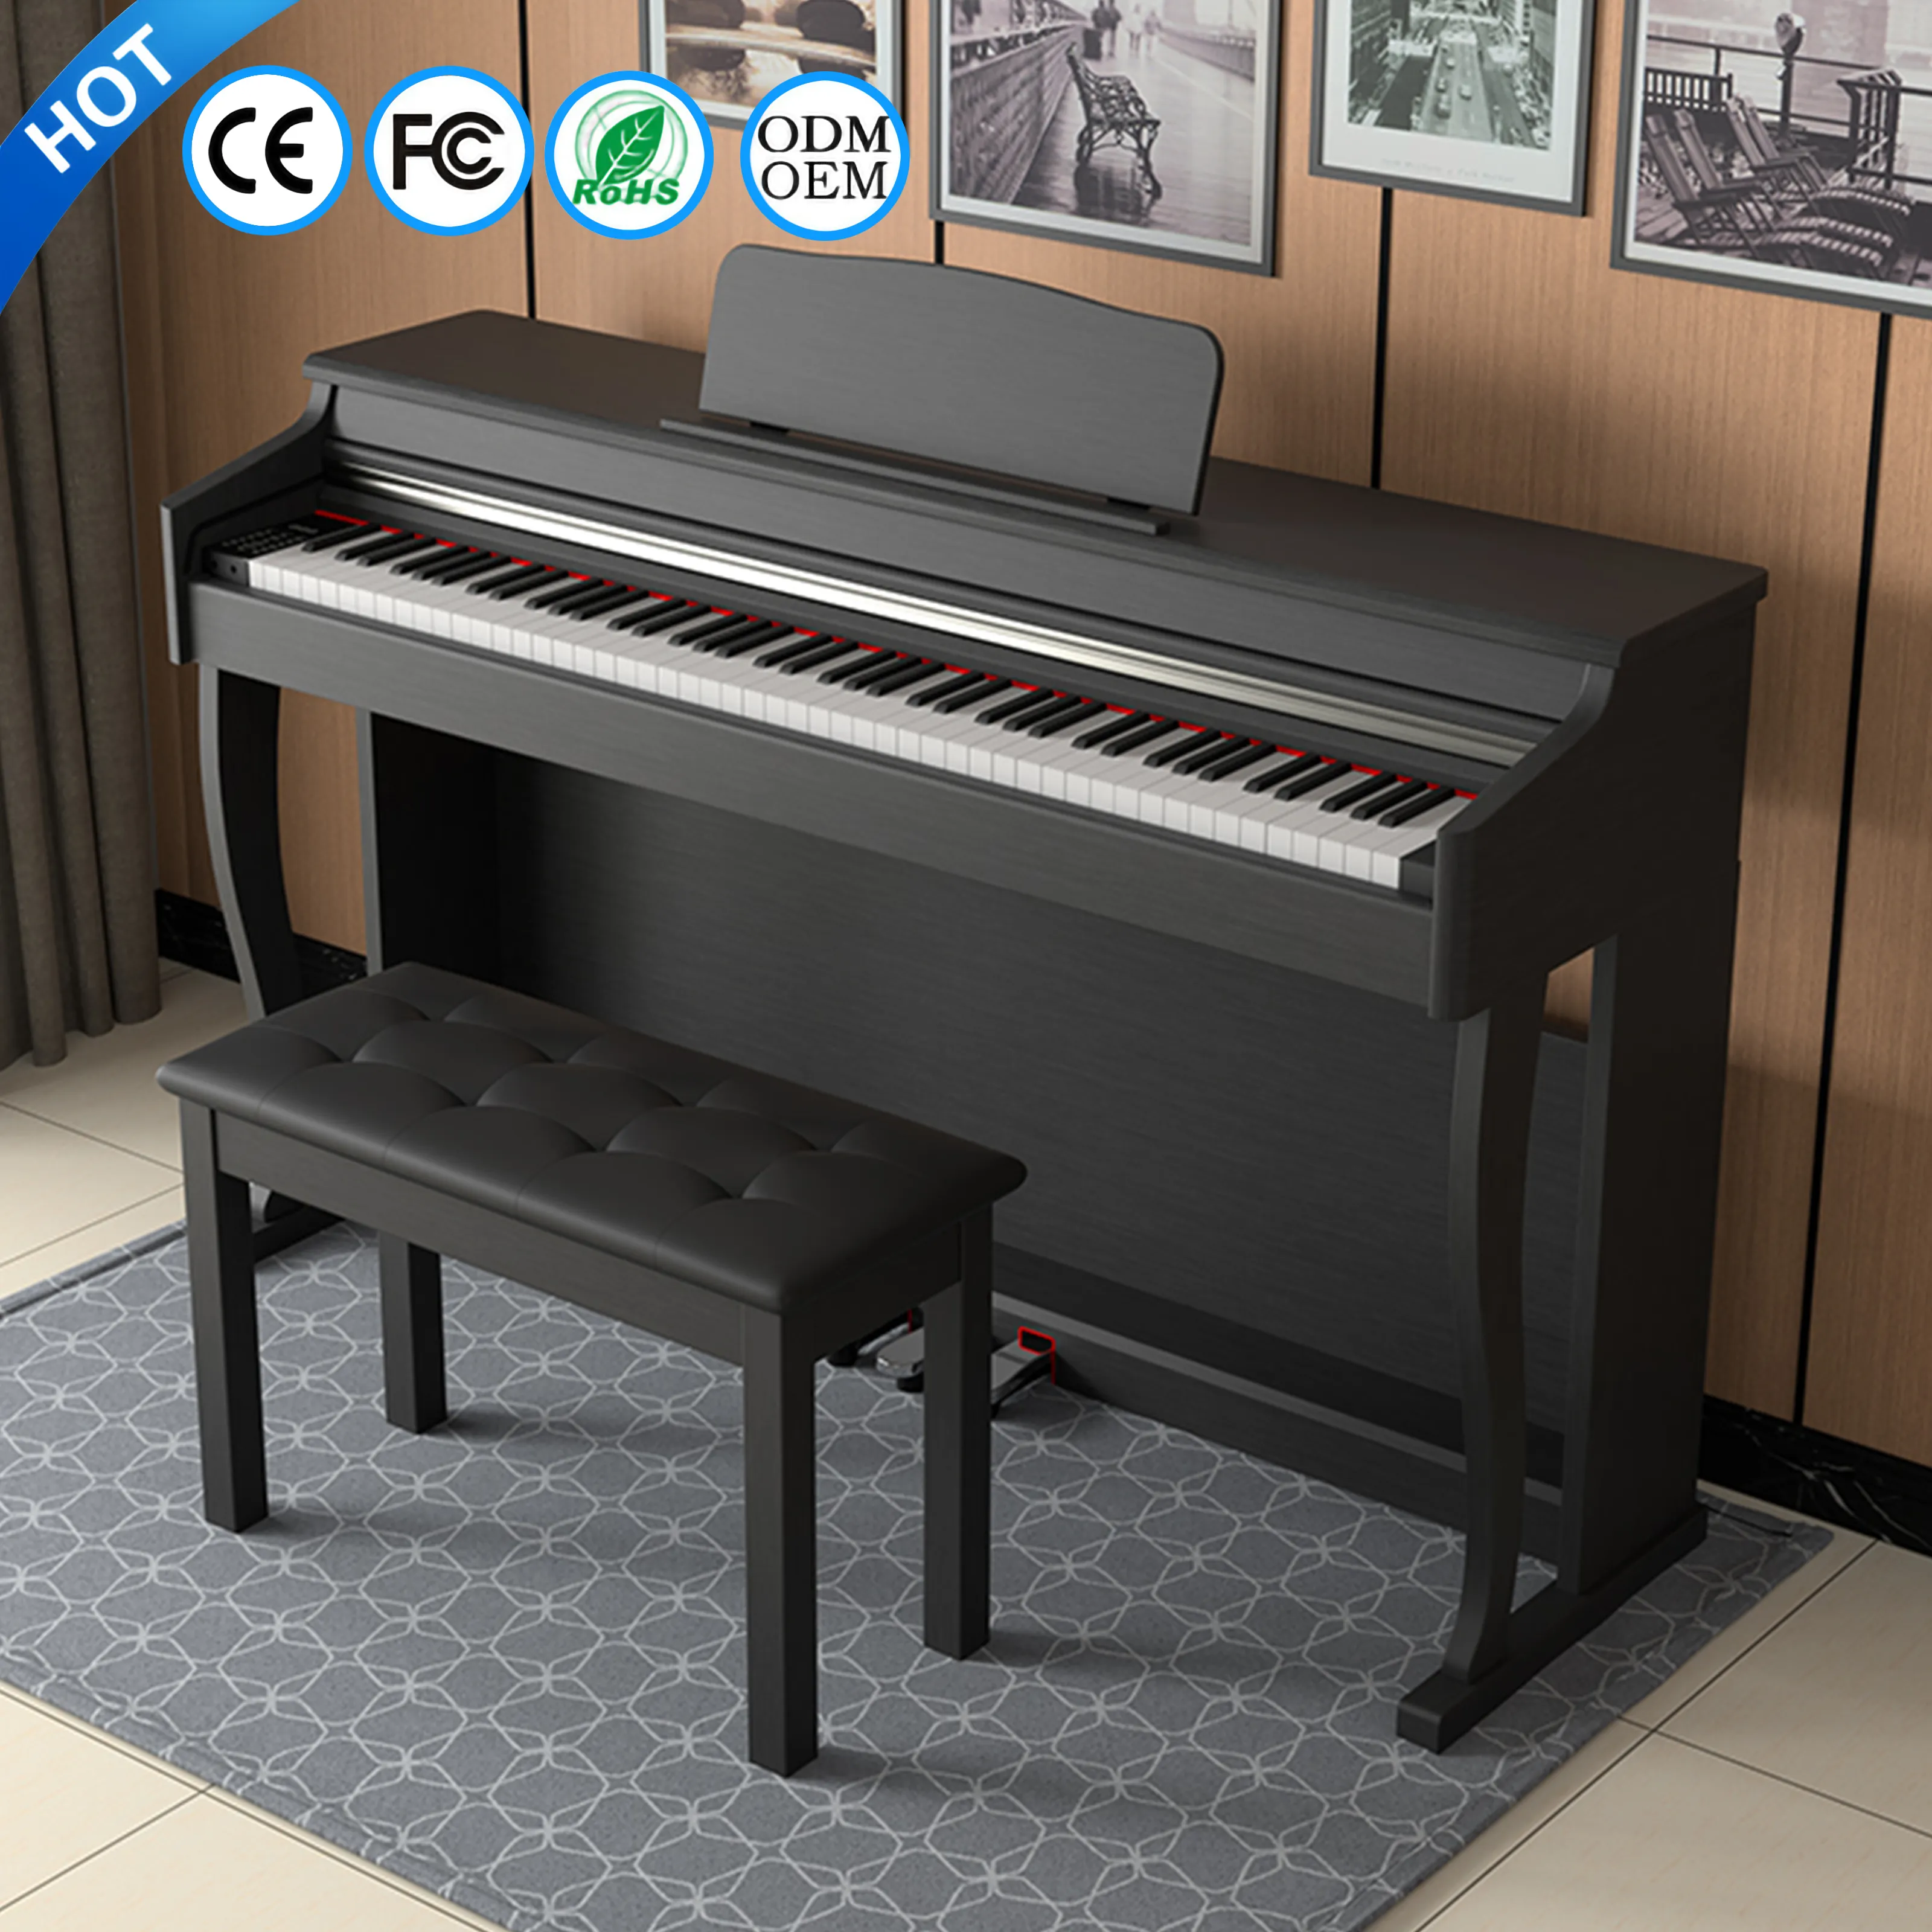 الكهربائية البيانو الكبرى electronique 88 اللمسات لوحة المفاتيح بيانو رقمي الرقمية 88 مفاتيح لوحة مفاتيح البيانو أداة